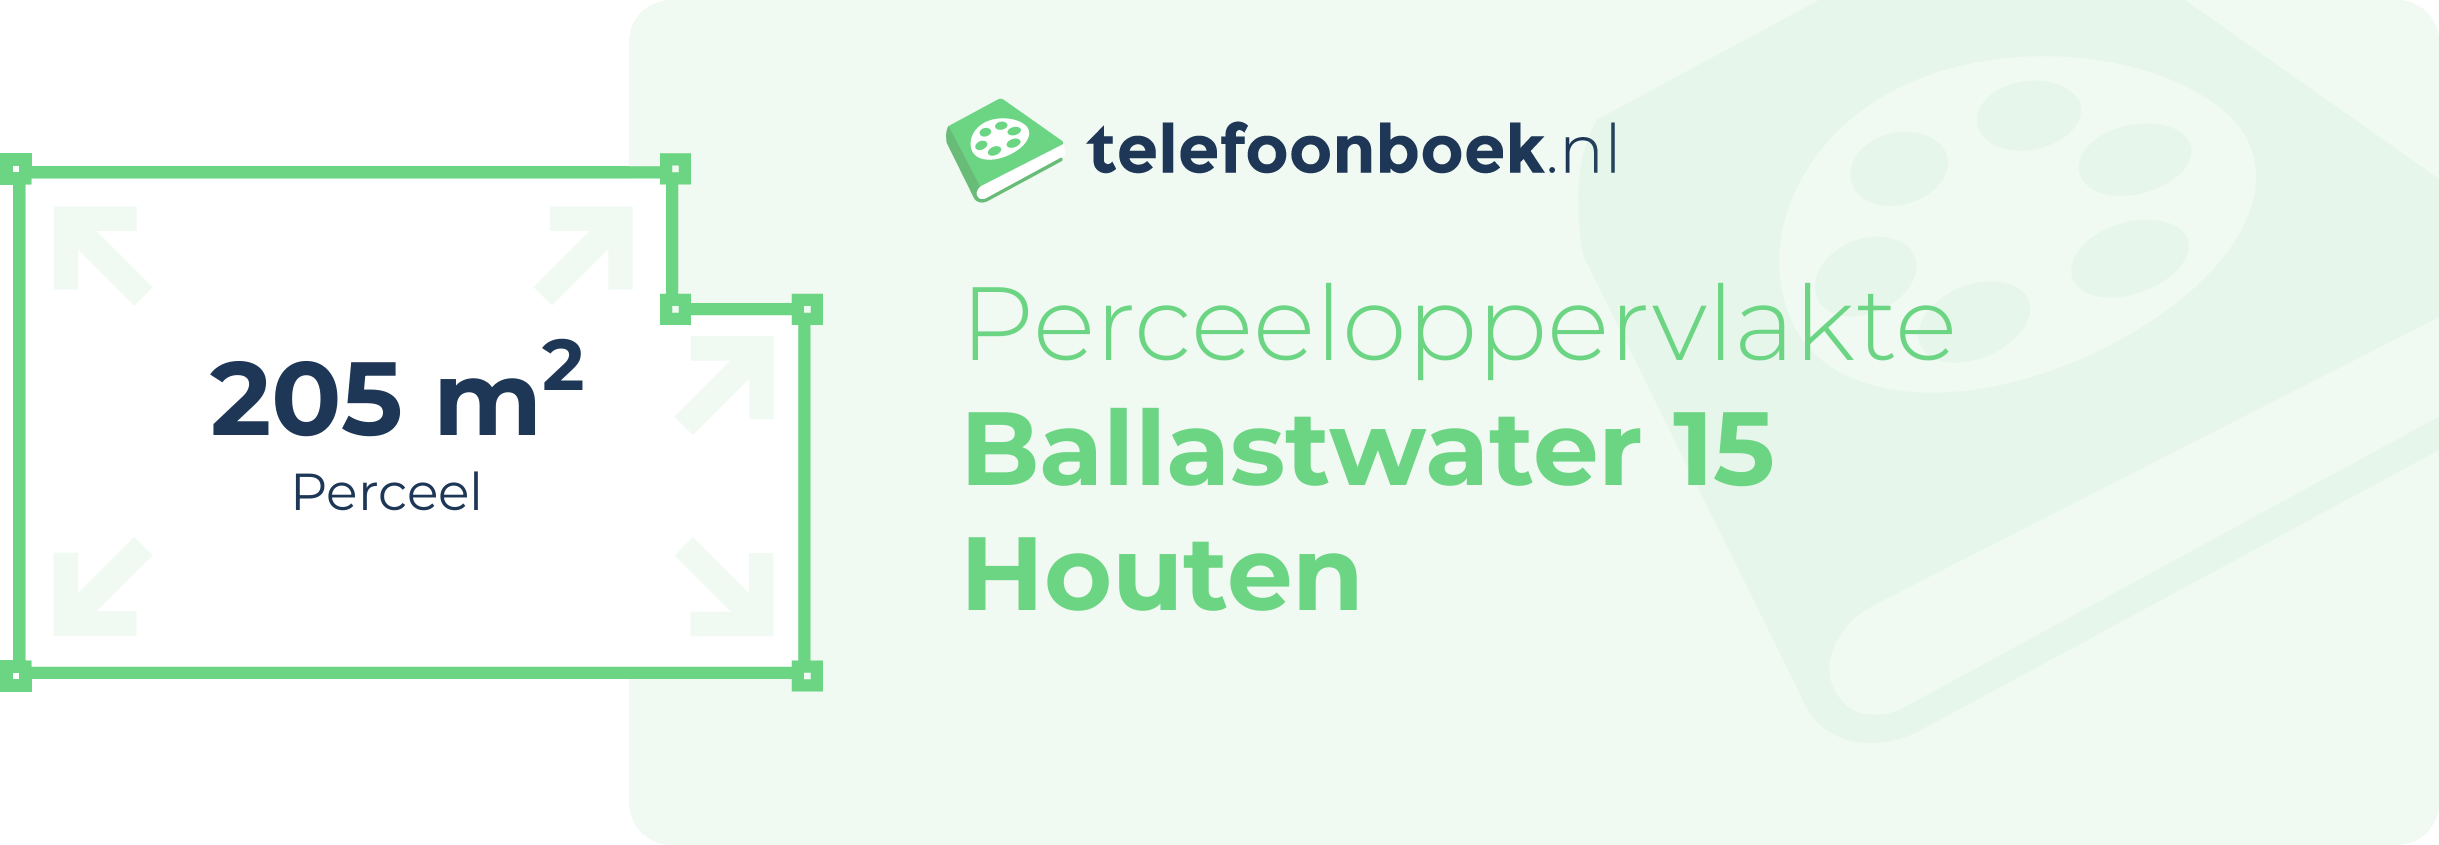 Perceeloppervlakte Ballastwater 15 Houten